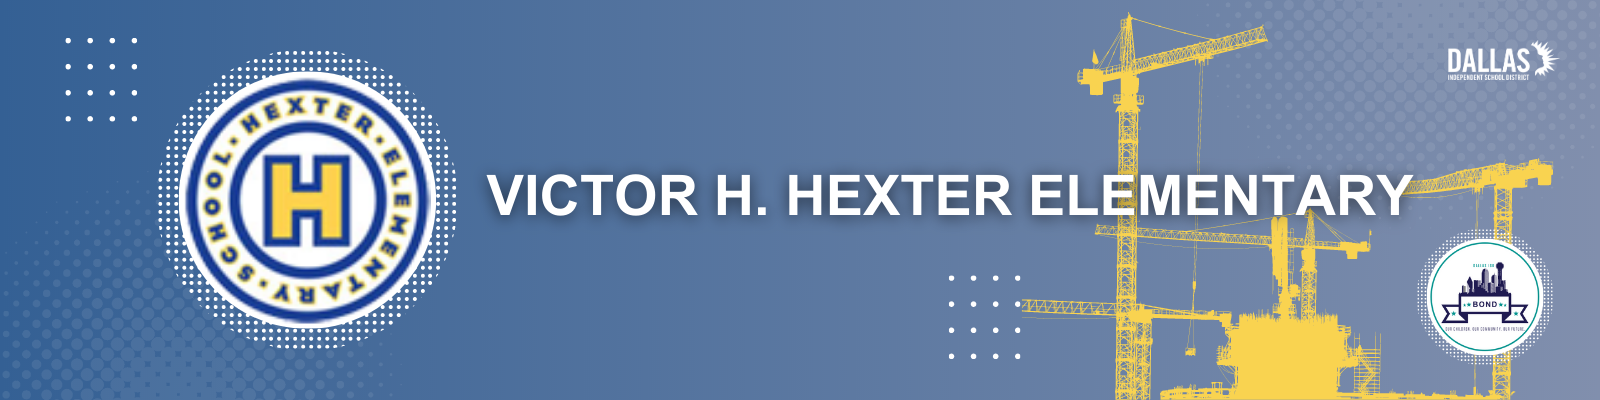 Hexter Elementary Header